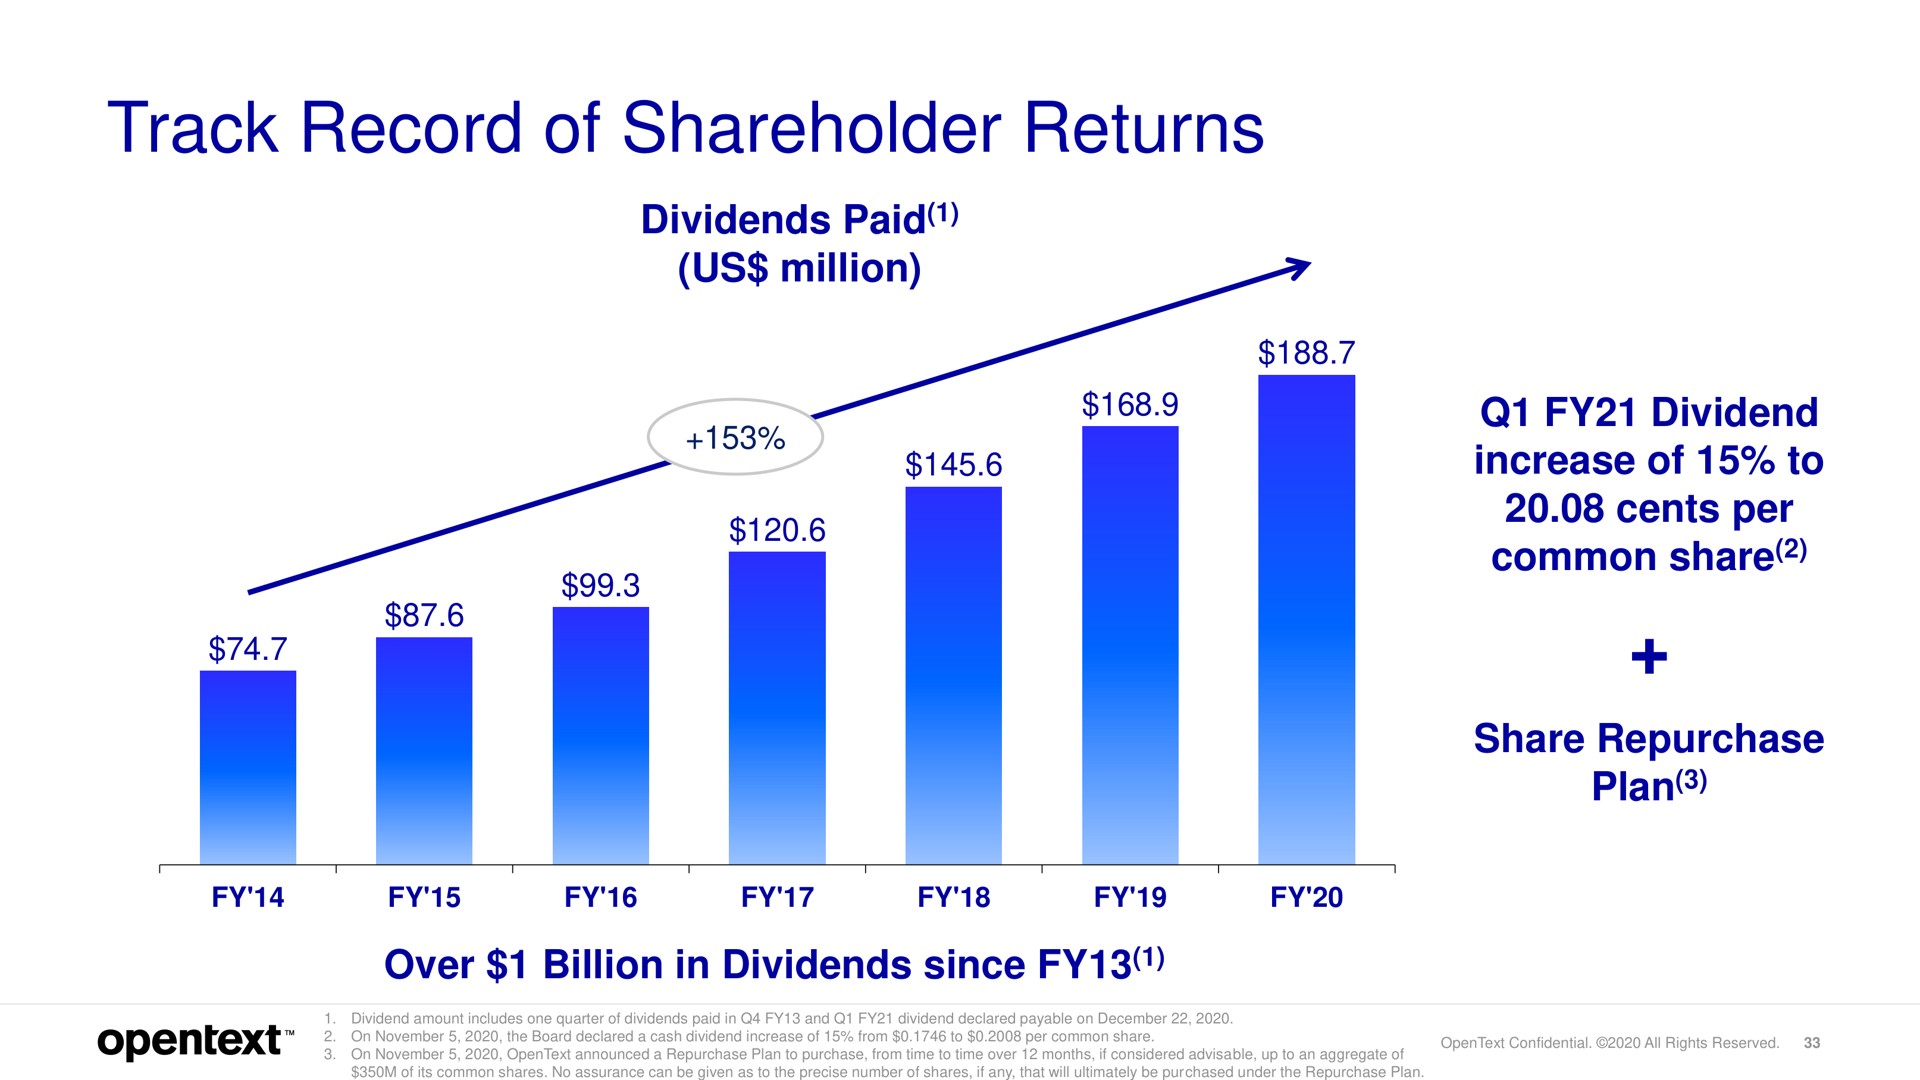 track record of shareholder returns | OpenText